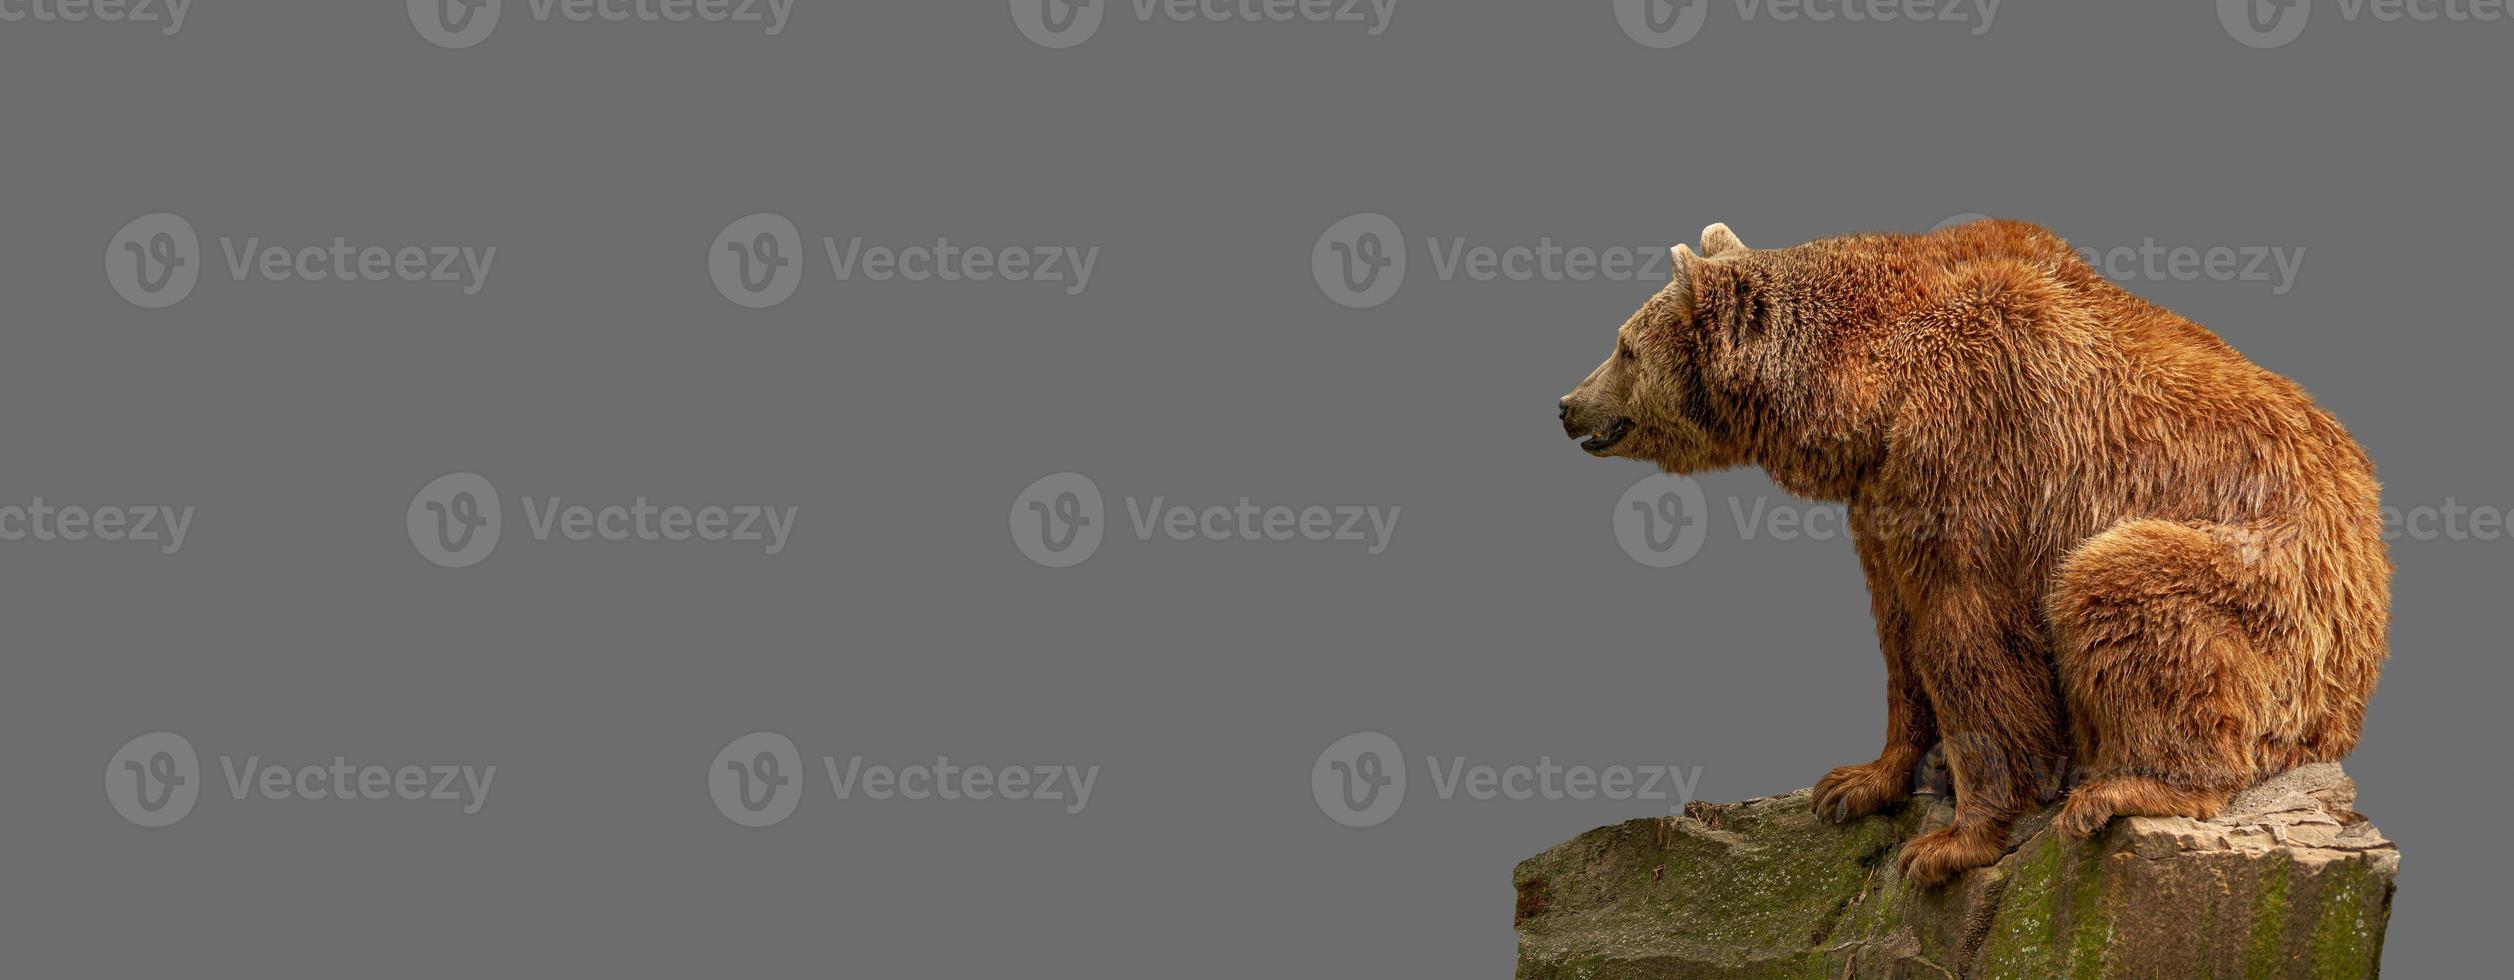 bannière avec grand ours brun solitaire assis au rocher sur fond gris uni avec espace de copie pour le texte, concept de biodiversité de la faune, bien-être animal, durabilité et conservation. photo